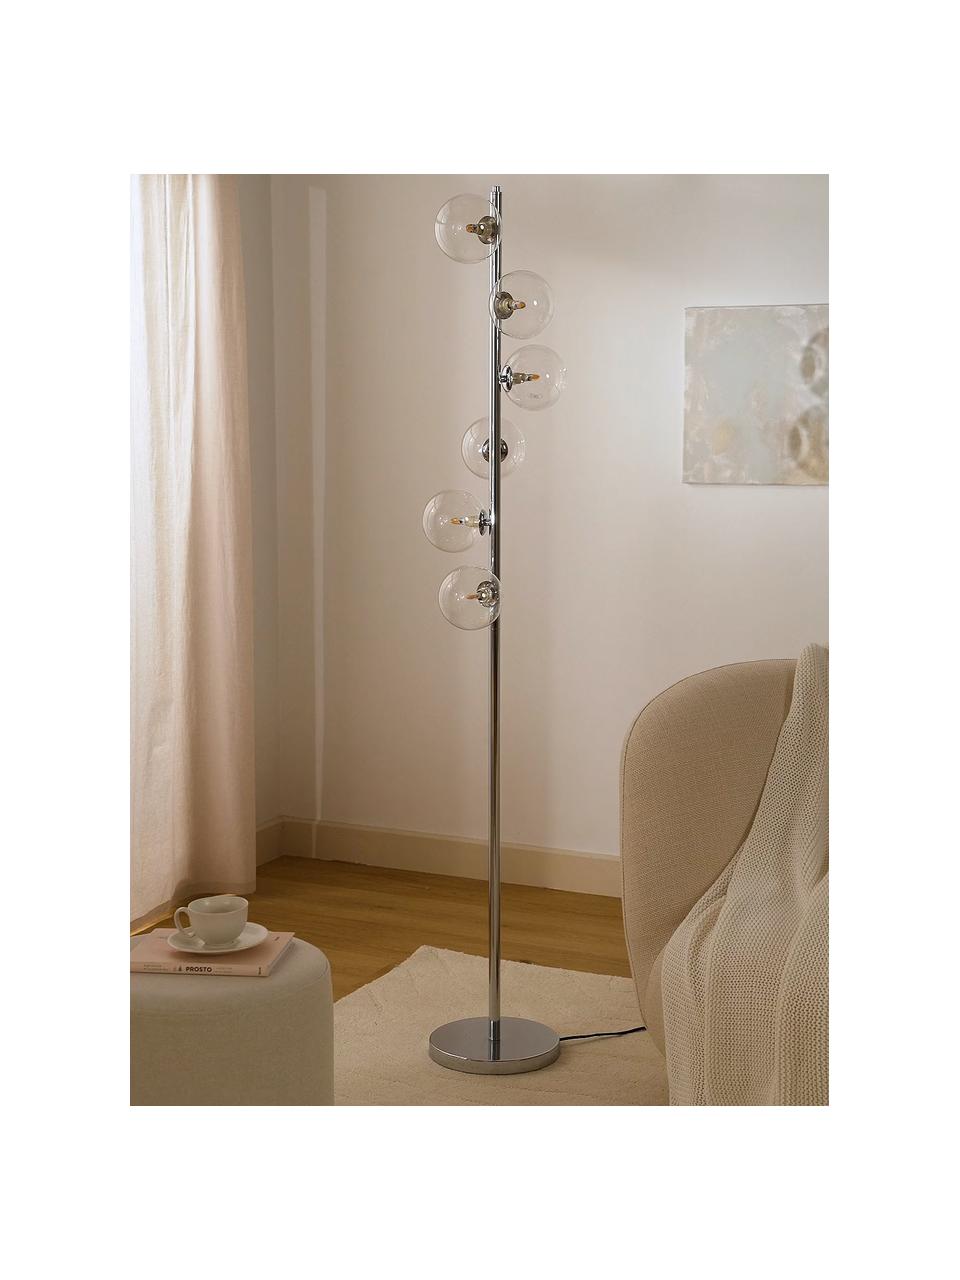 Stehlampe Scala in Silber, Lampenschirm: Glas, Lampenfuß: Stahl, verchromt, Silberfarben, Ø 28 x H 160 cm